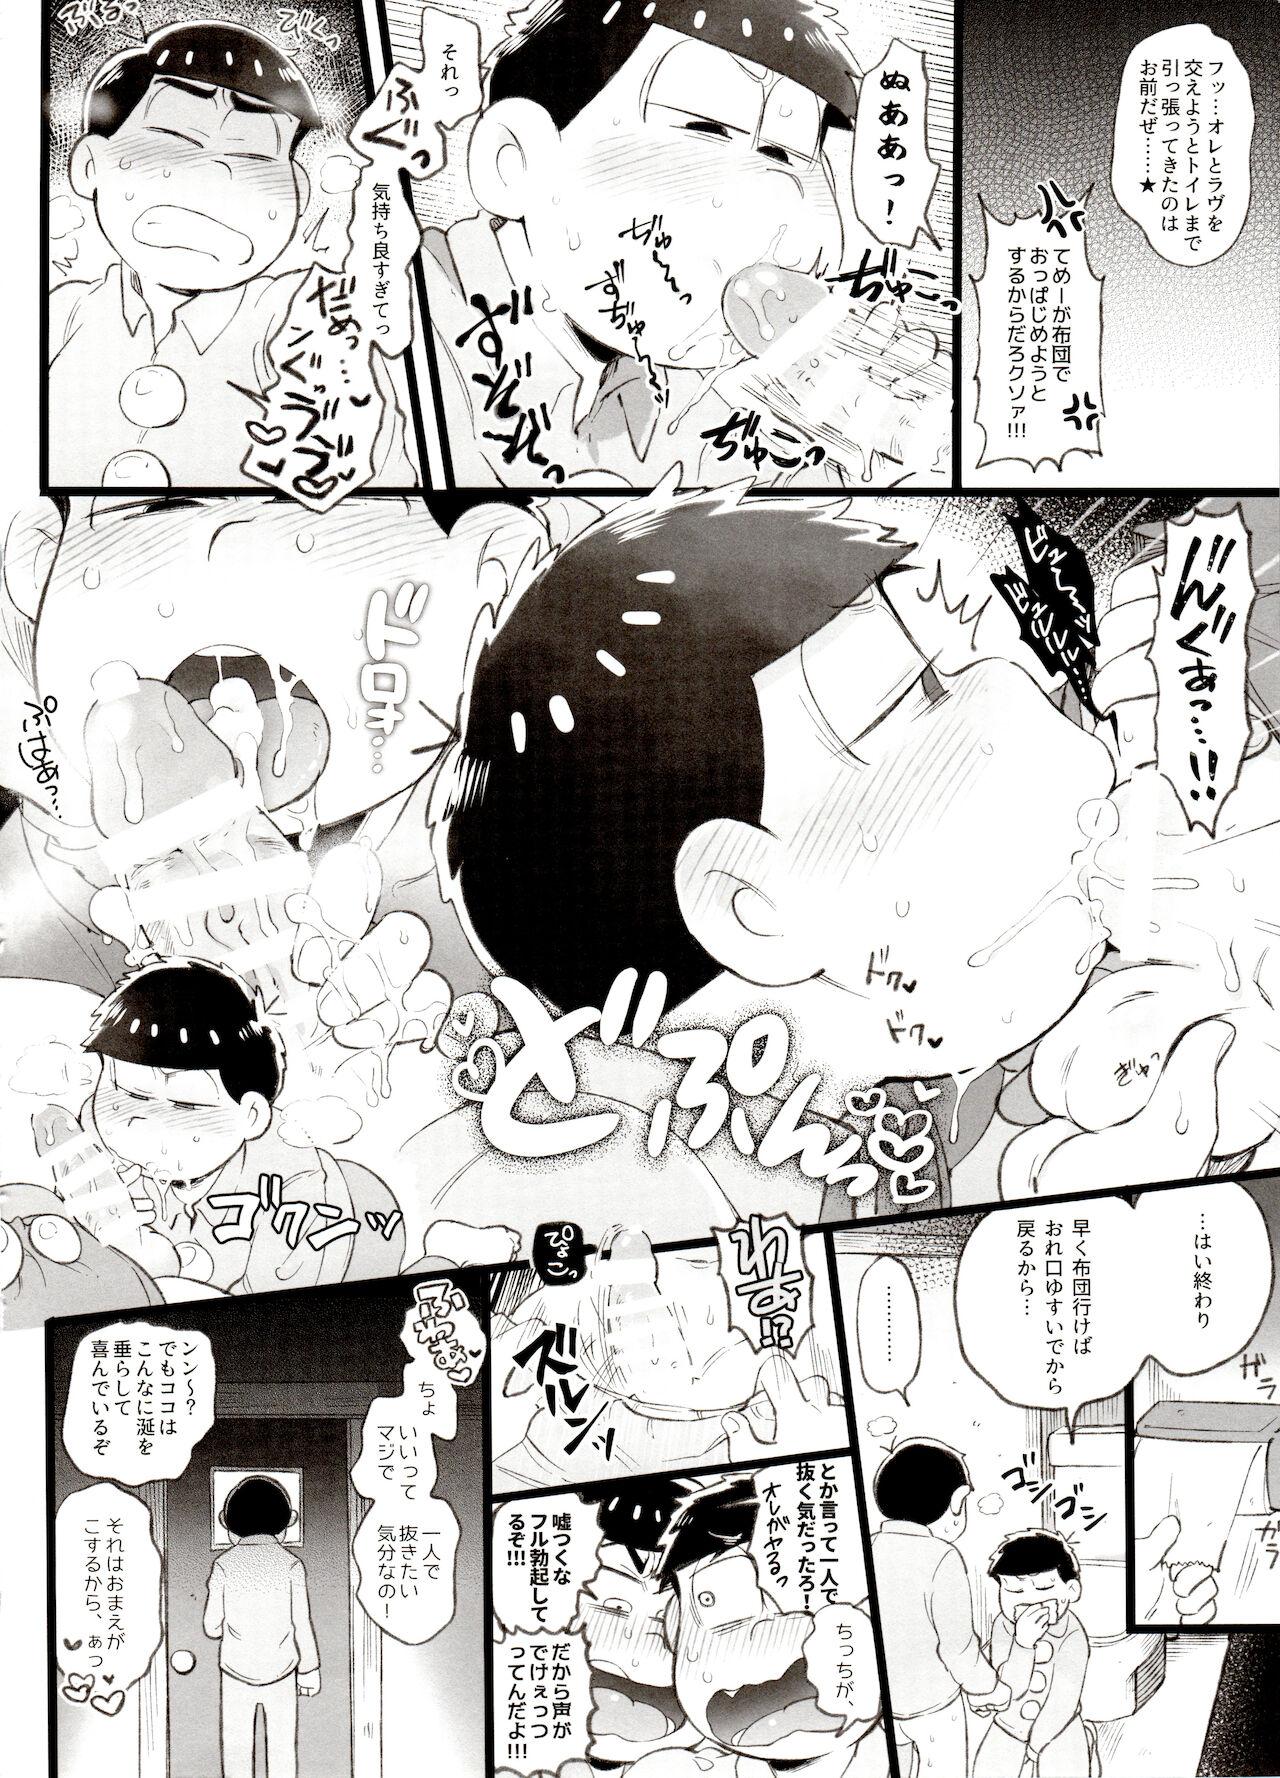 Cums Kahou 10-ji Yon no Omake Hon + Andante no Koufukuron Gojitsu Manga - Osomatsu-san Turkish - Page 3